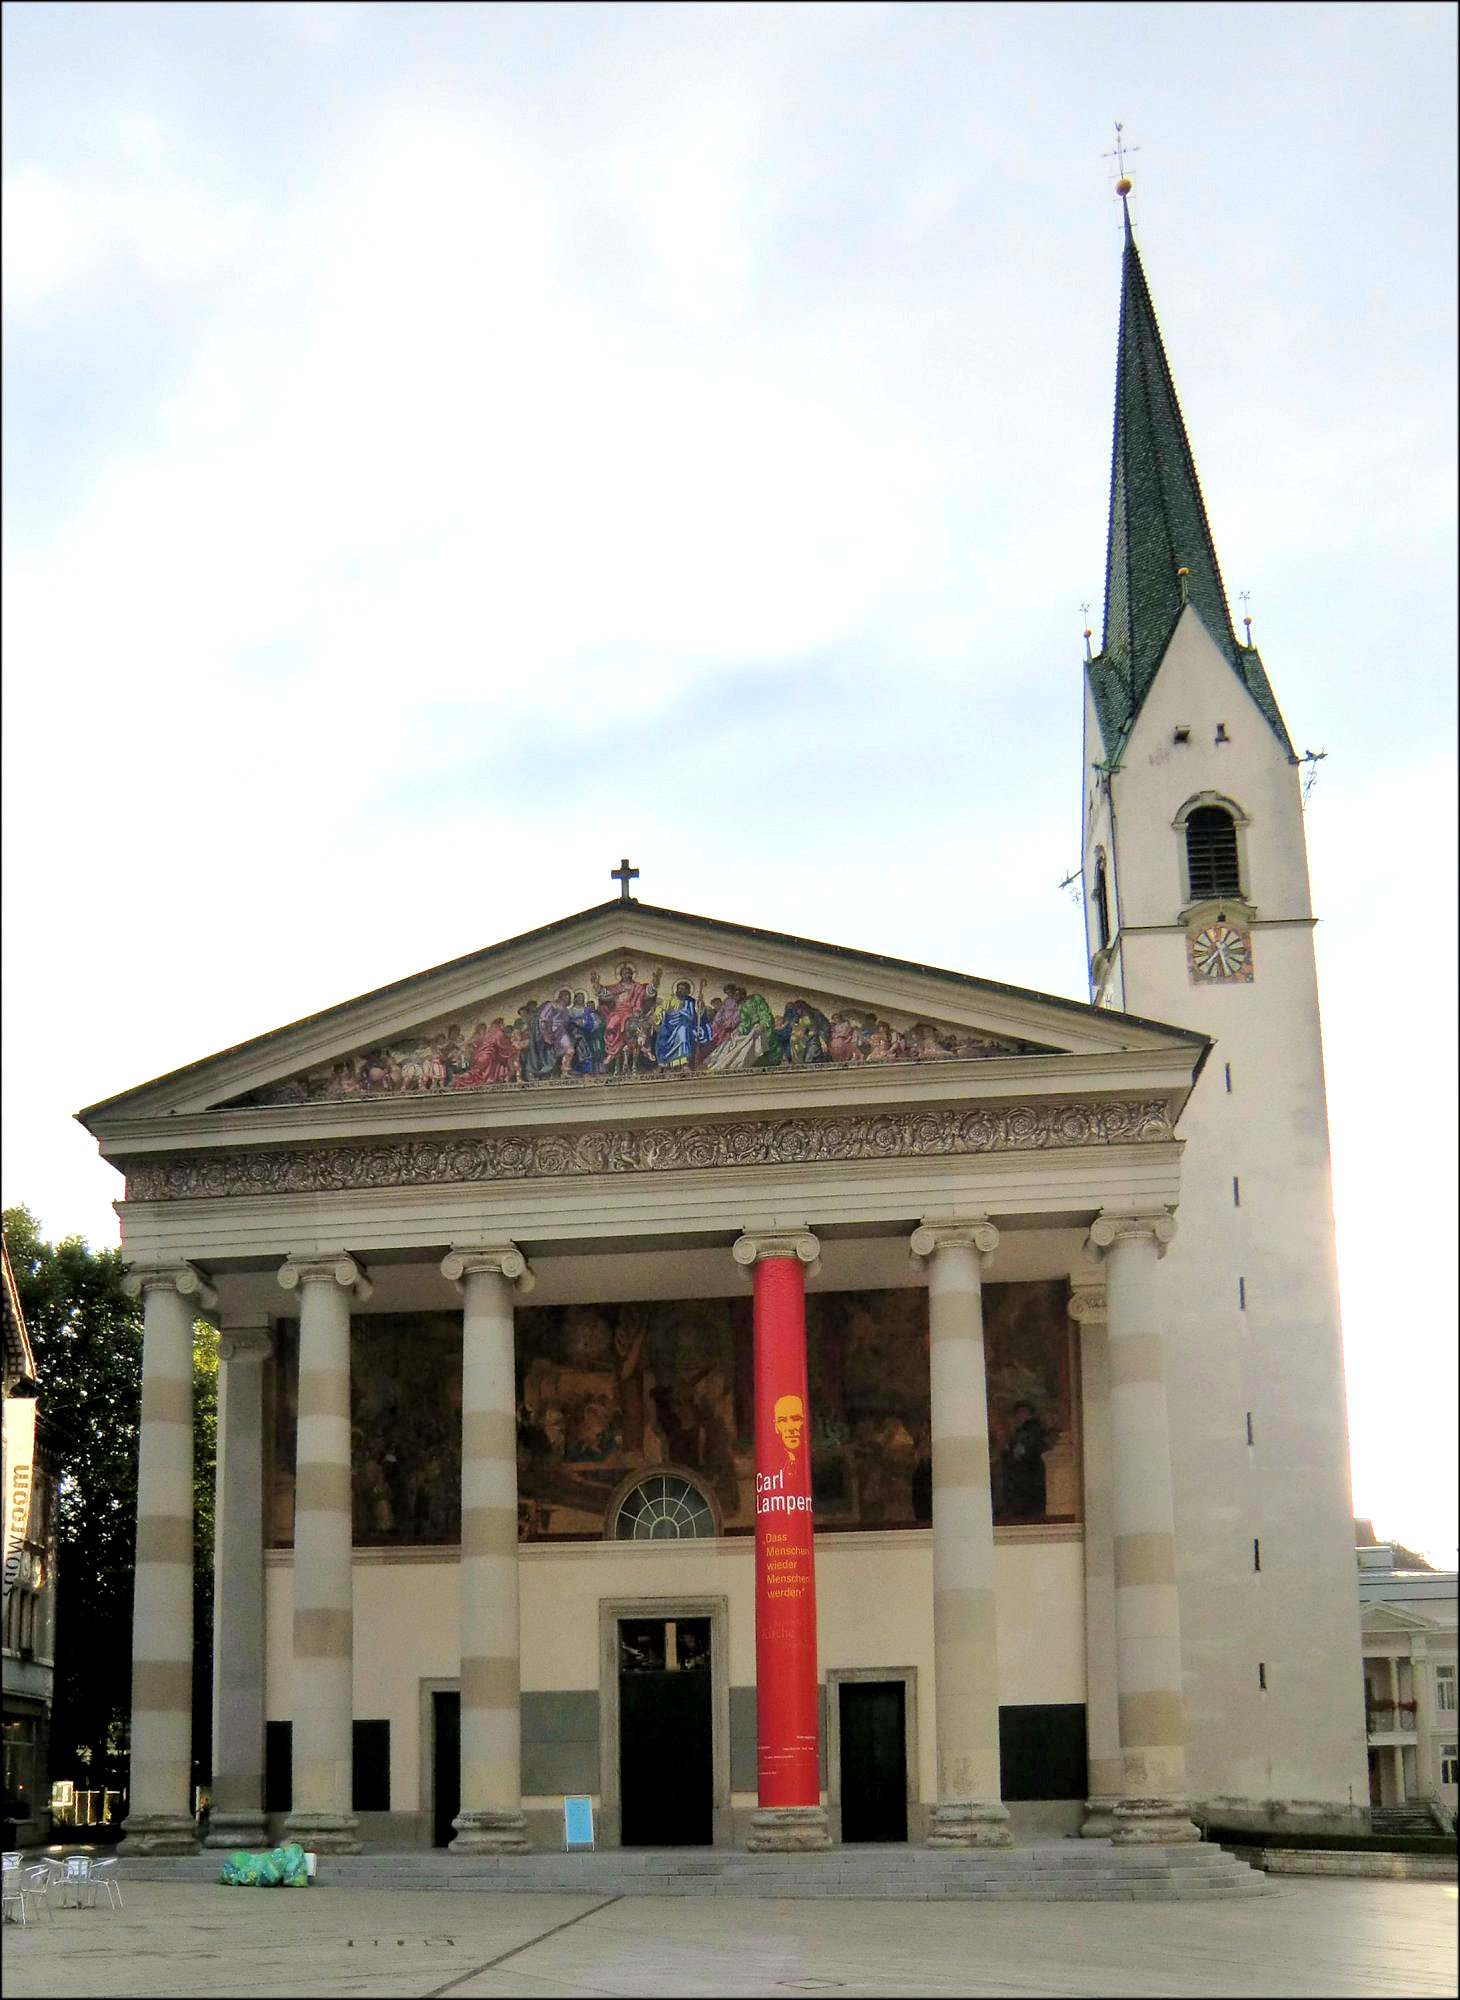 Pfarrkirche St. Martin in Dornbirn mit an Lampert erinnernder Installation auf einer Säule